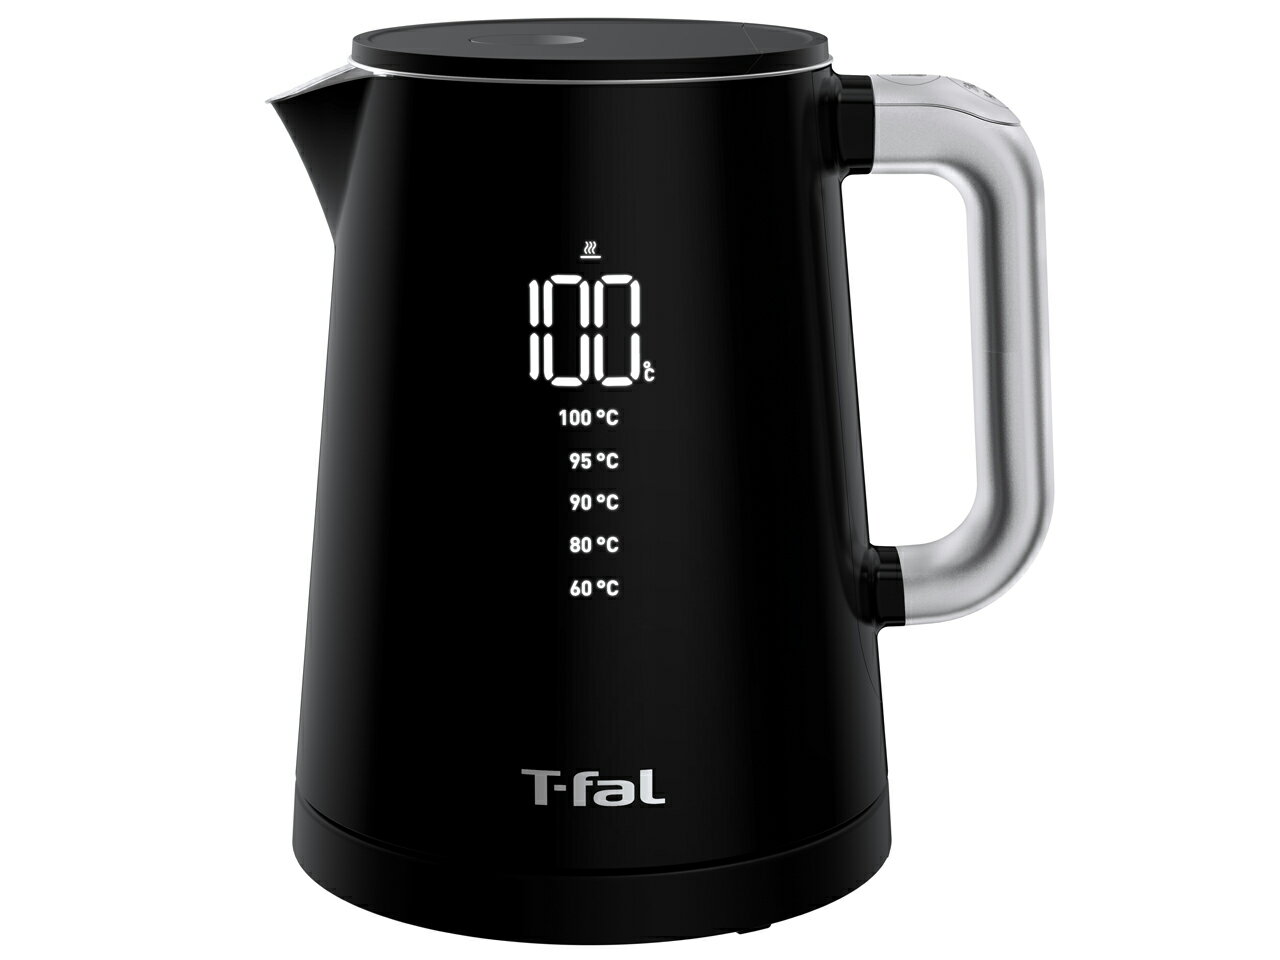 日本代購 T-FAL 法國特福 KO8548JP 溫度顯示電熱水壺 1.0L 數字顯示溫控 58秒沸騰 5段溫度設定